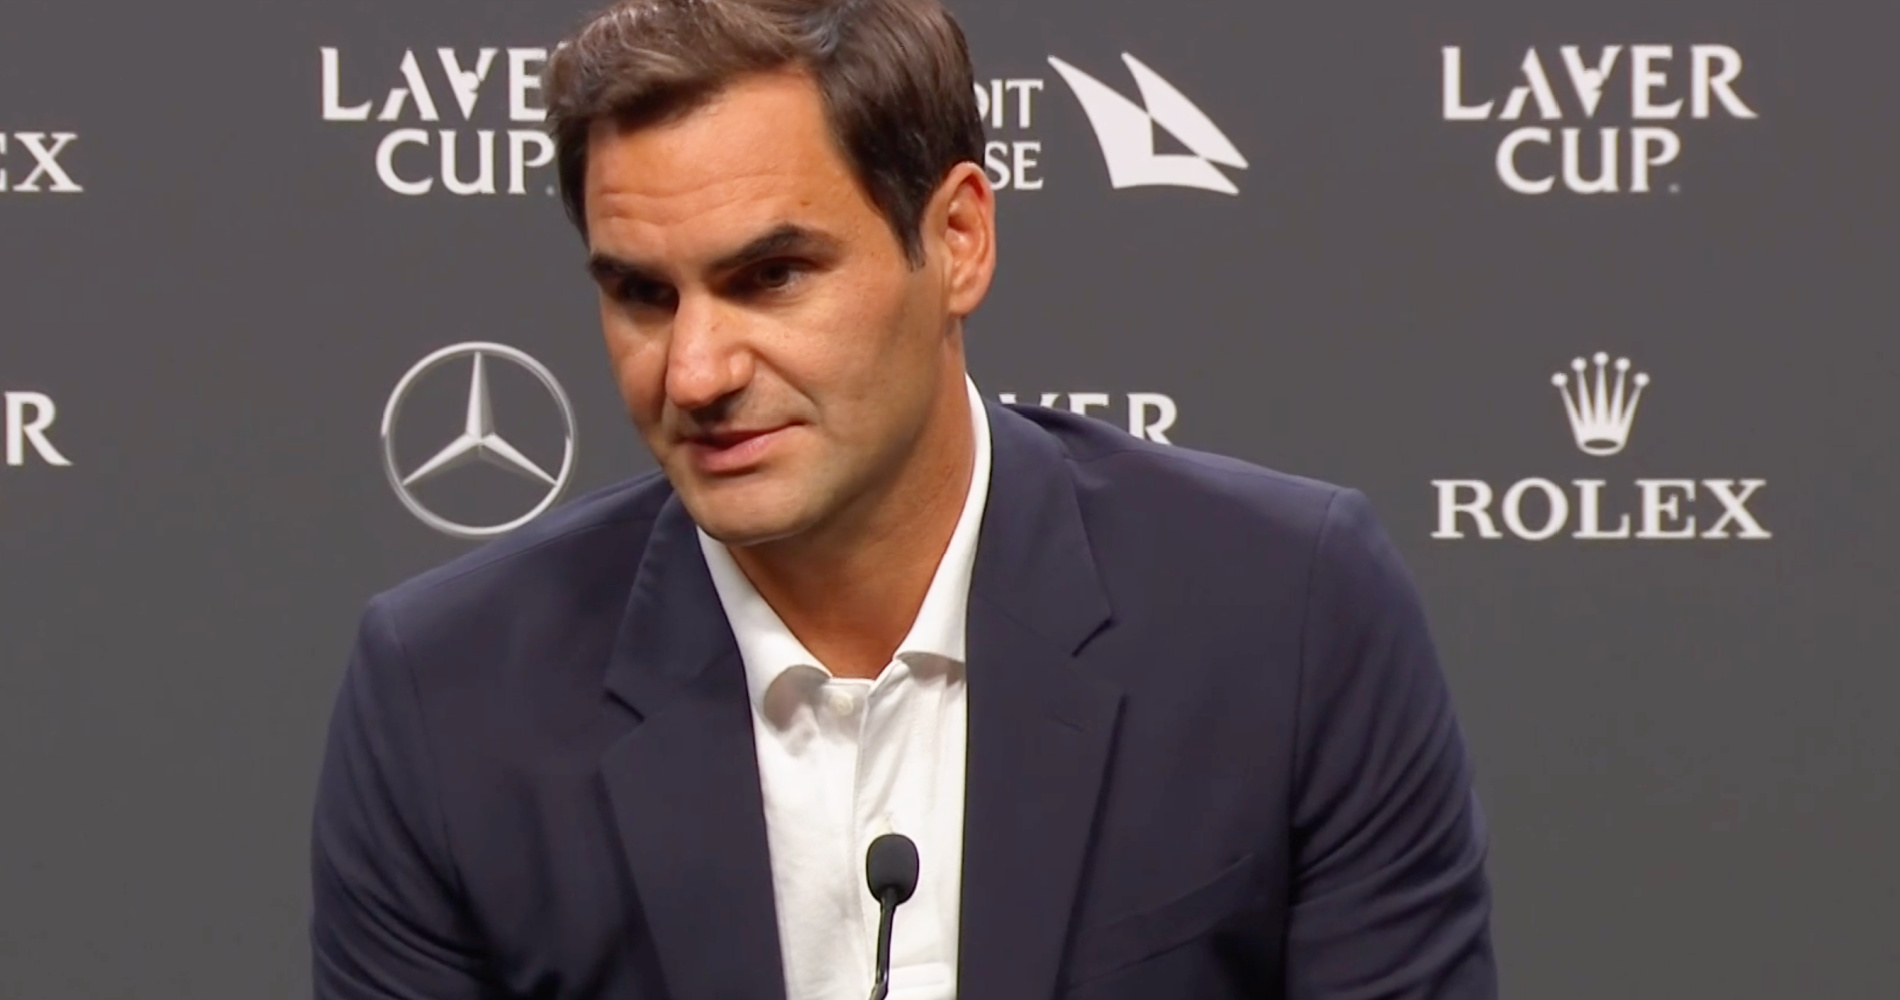 Roger Federer, Laver Cup 2022 press conference